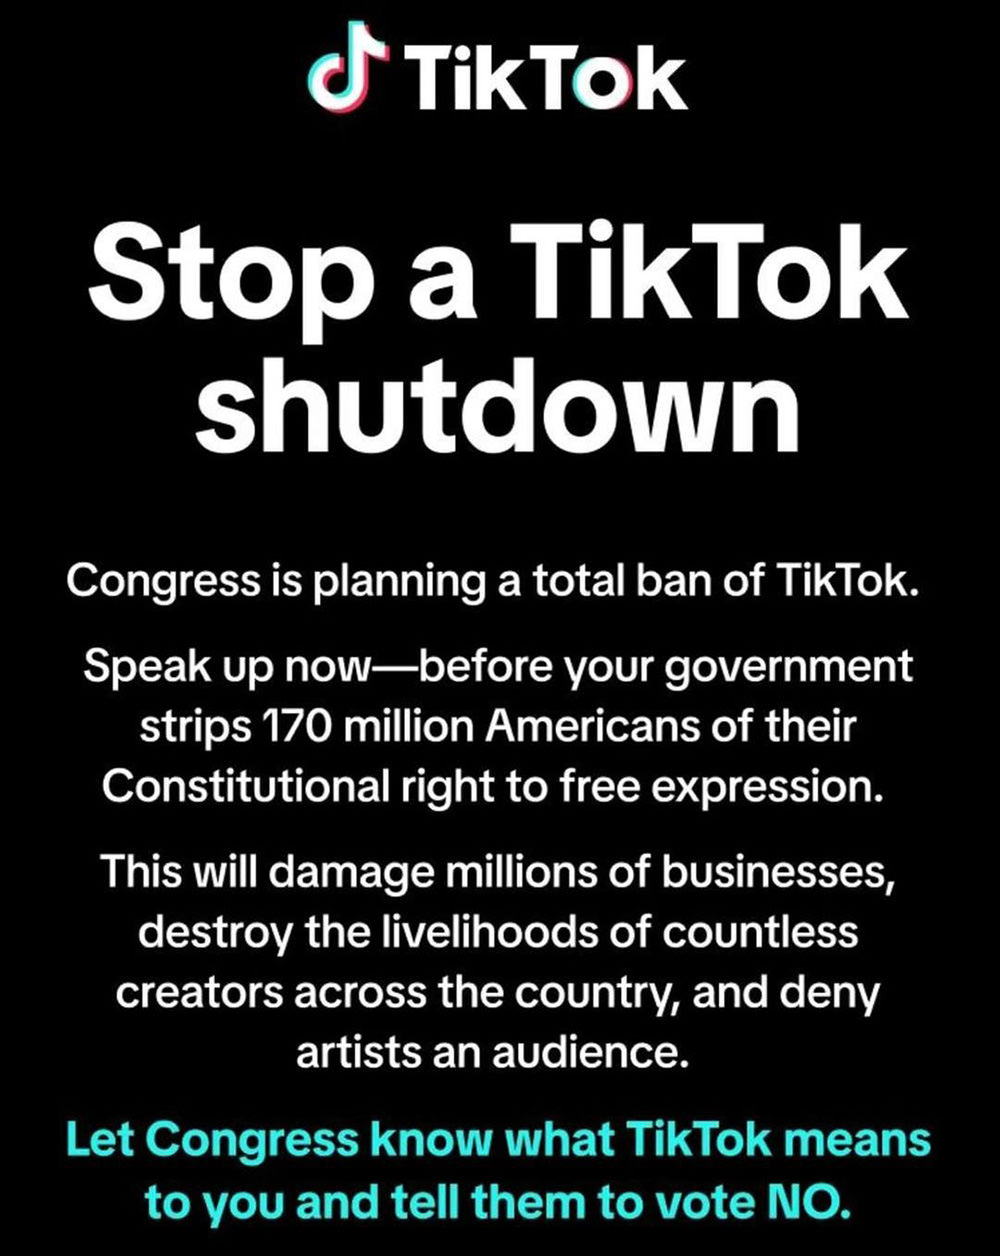 STOP A TIKTOK SHUTDOWN! message when you open up TikTok now.